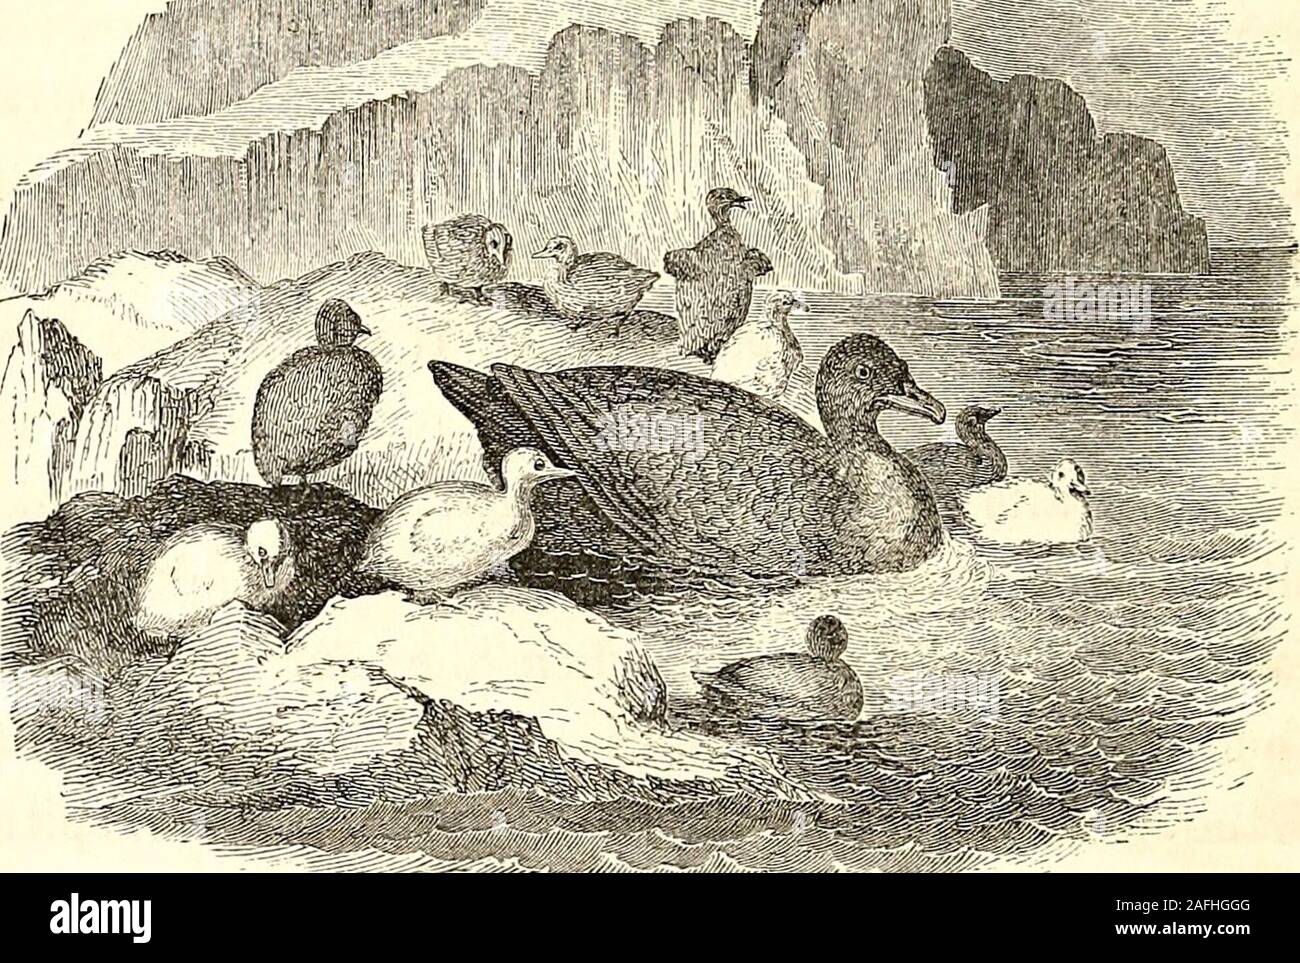 . Esplorazioni artiche: la seconda spedizione Grinnell in cerca di Sir John Franklin, 1853, '54, '55. EIDER isola. Era vicino a chiusura dell'allevamento-stagione. Thenests erano ancora occupati dalla madre-uccelli, ma manyof il giovane era scoppiata il guscio e sono state nestlingunder parafango, o prendendo le loro prime lezioni nel thewat*^r-pool. Alcuni, più avanzata, erano già in theice-canali protetti, greedily è attesa per la shell-fishand ricci di mare, che il vecchio bird disattivato se stessa inprocuring per loro. Il cormorano gabbiano. 319 vicino era un basso e roccia isolata-mensola, che wecalled Hans Isla Foto Stock